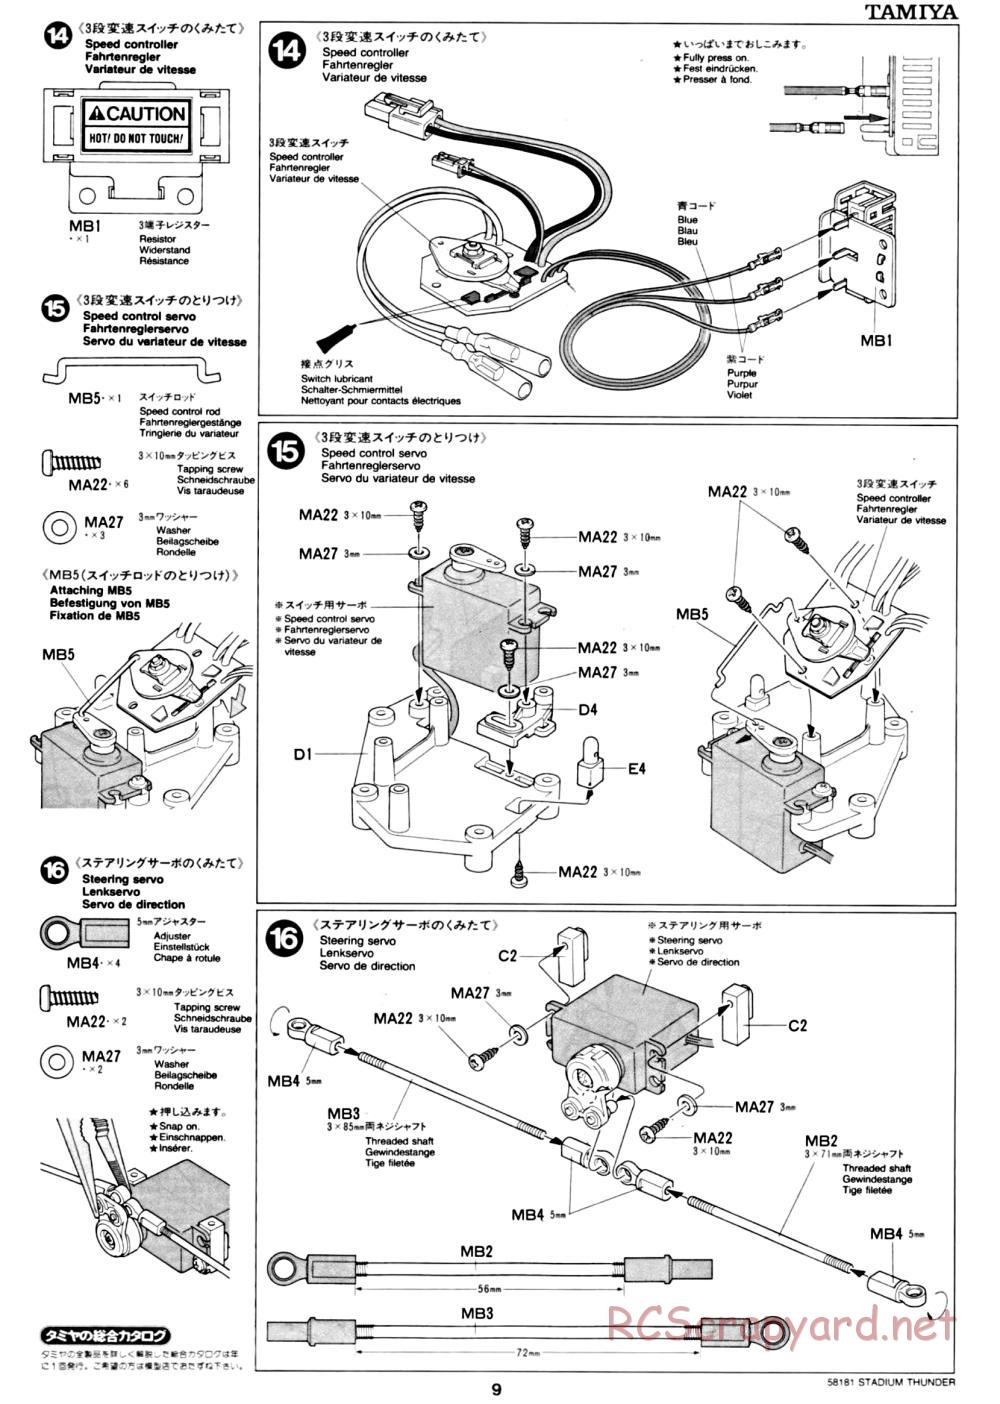 Tamiya - Stadium Thunder Chassis - Manual - Page 9